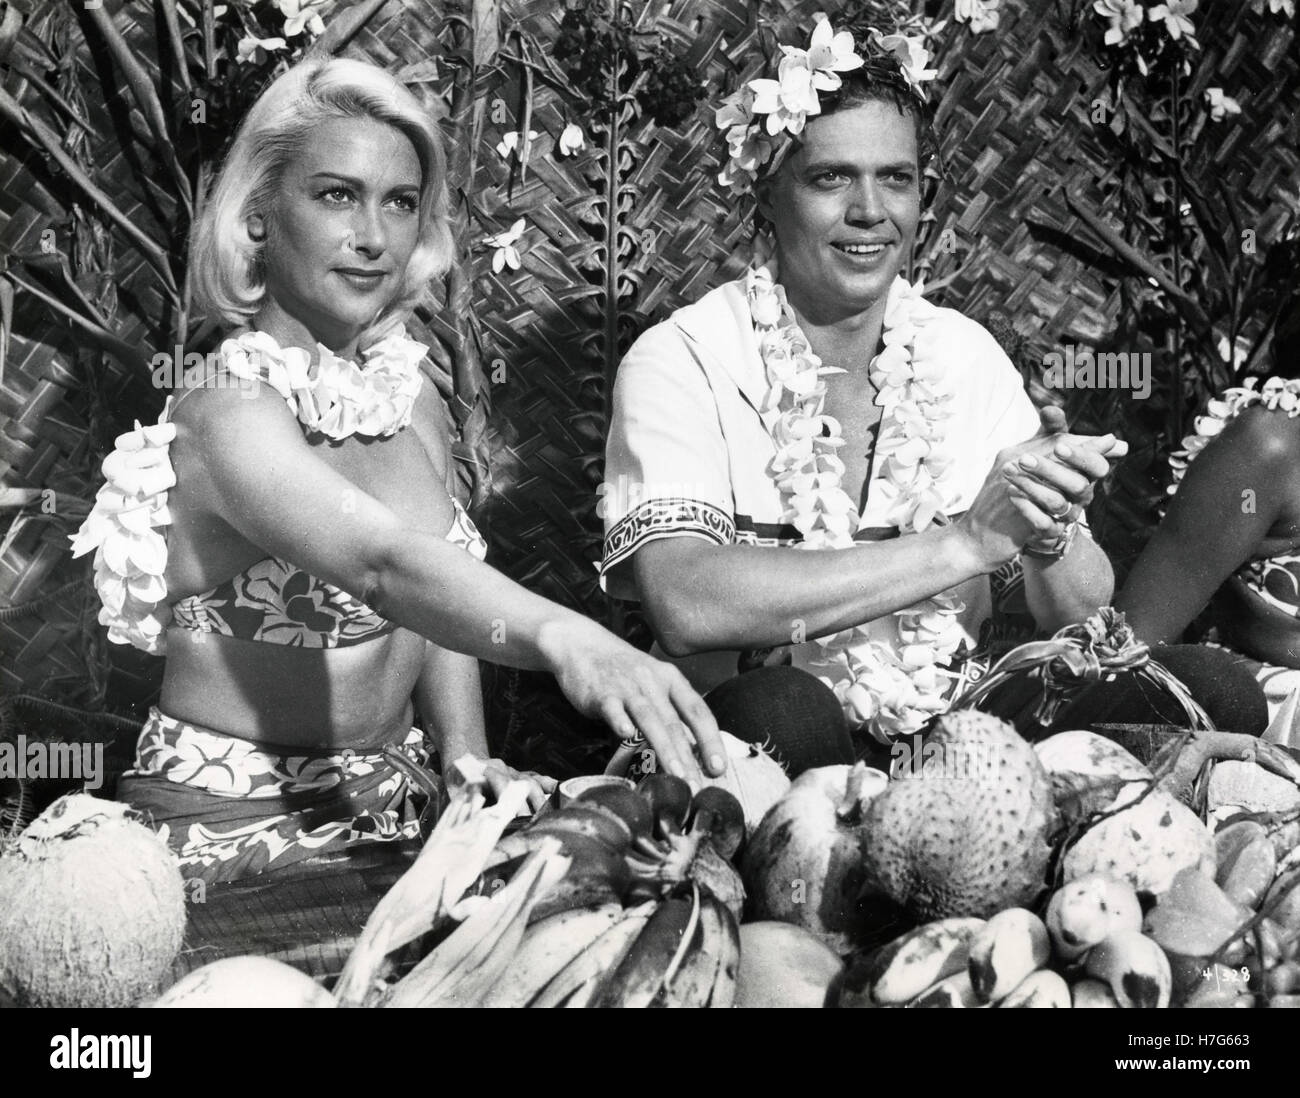 Martine Carol et acteurs Karlheinz Bohm dans le film Nachte auf Tahiti, Allemagne 1957 Banque D'Images